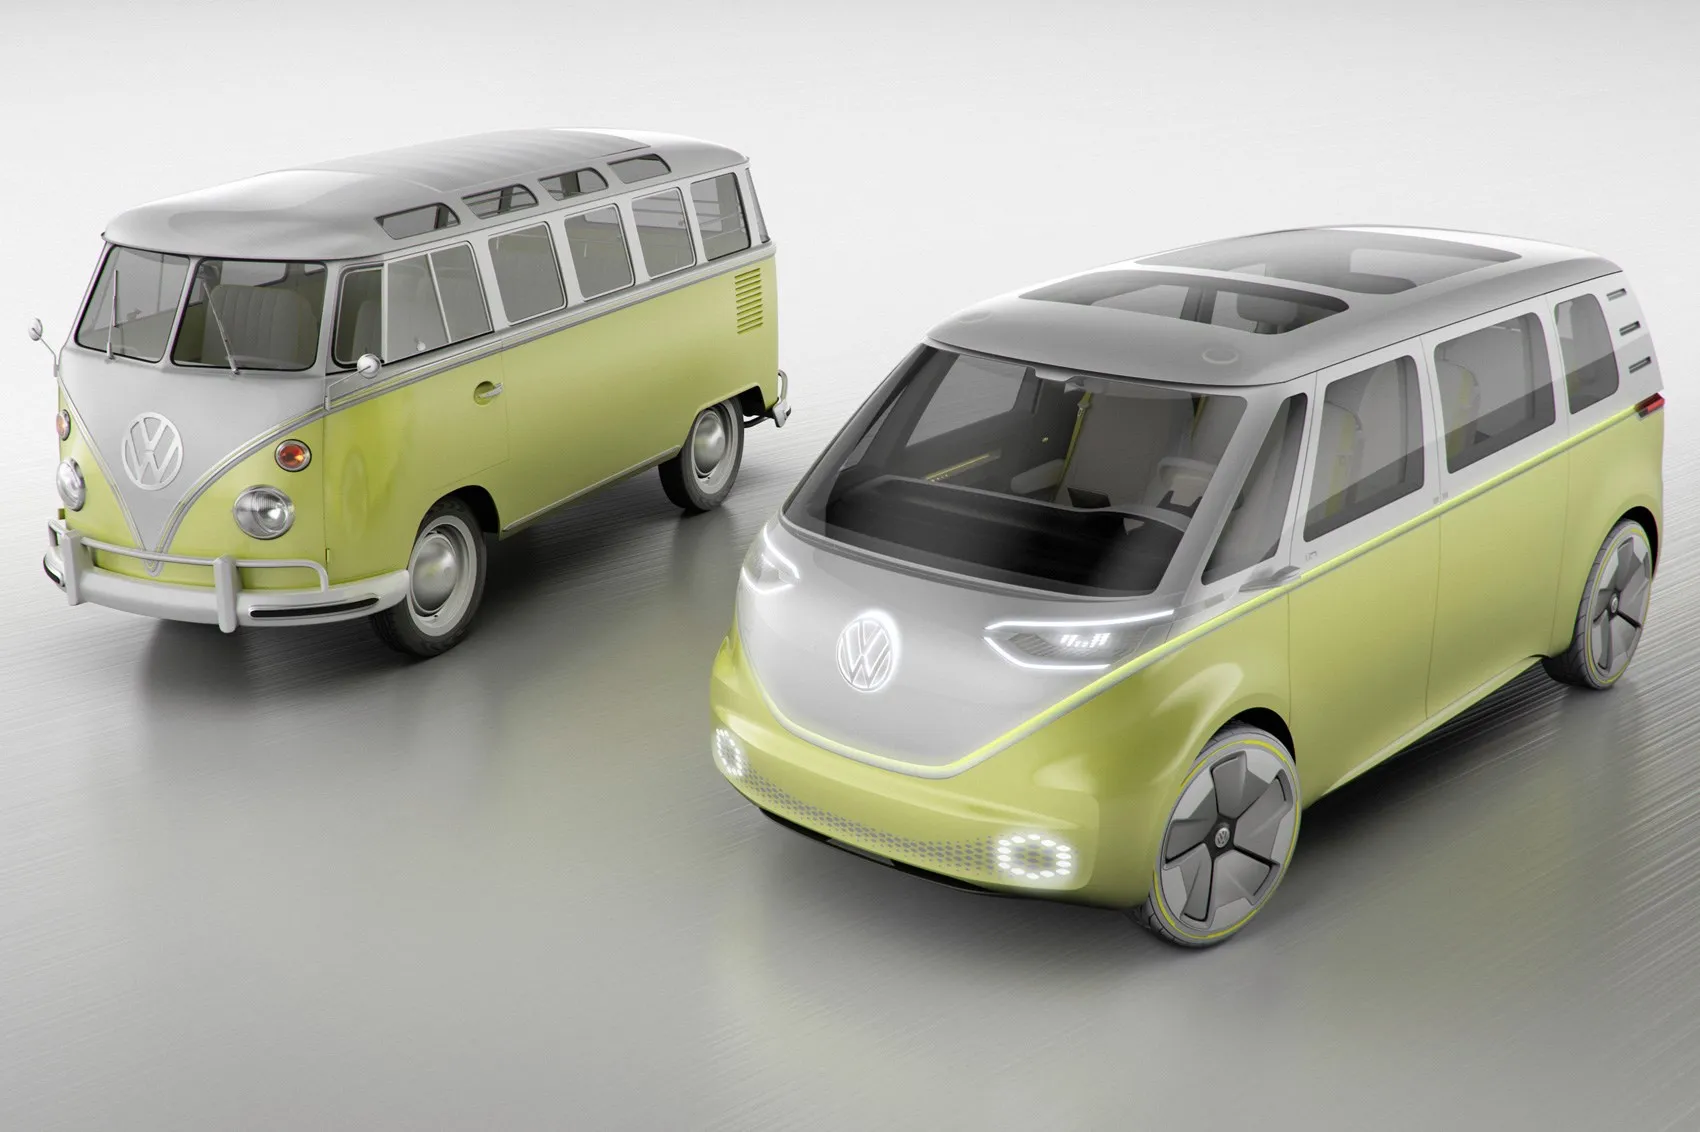 Мікроавтобус Volkswagen 1950-х років (ліворуч) і його сучасна версія Volkswagen ID Buzz 2017 року